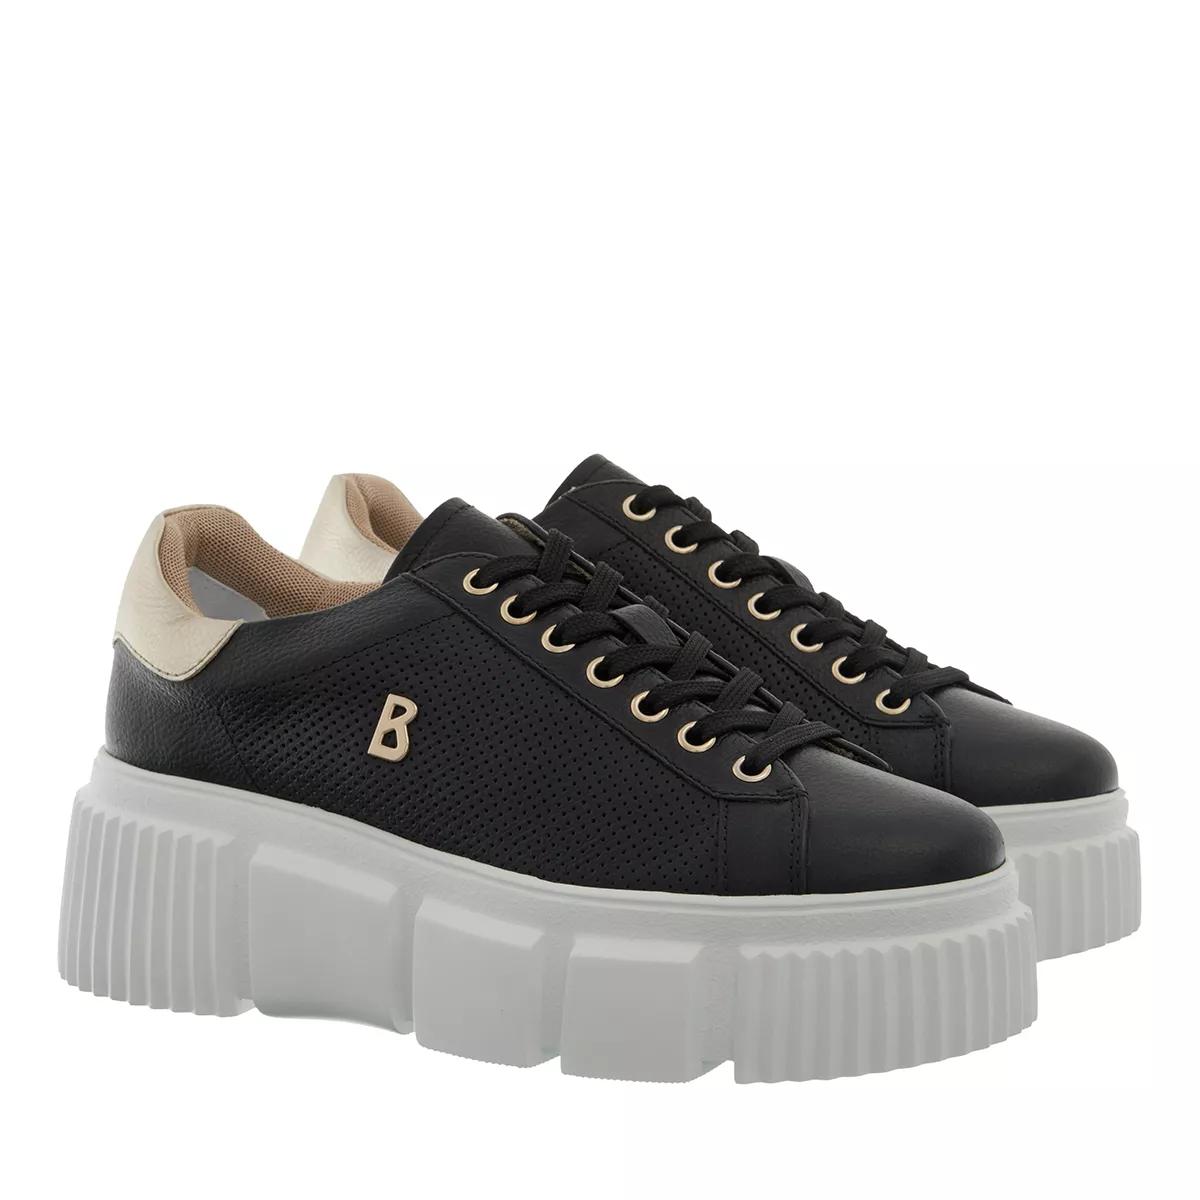 Bogner Sneakers - Shanghai 1 B - Gr. 39 (EU) - in Schwarz - für Damen von Bogner